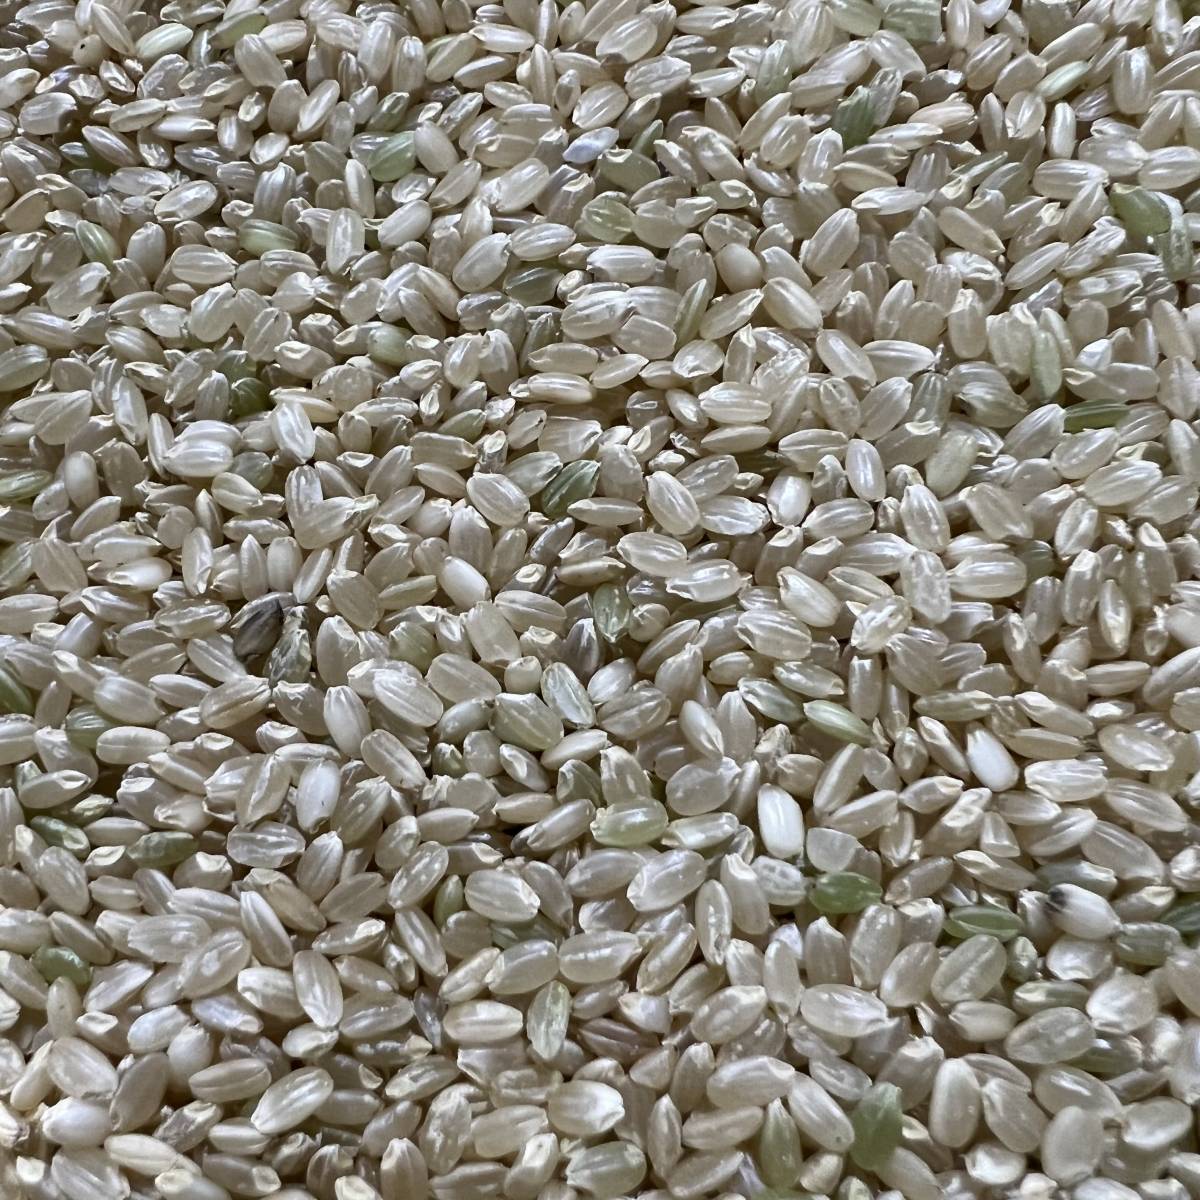 令和3年 秋田県産 減農薬コシヒカリ玄米22kg 中米 農家直送_画像1